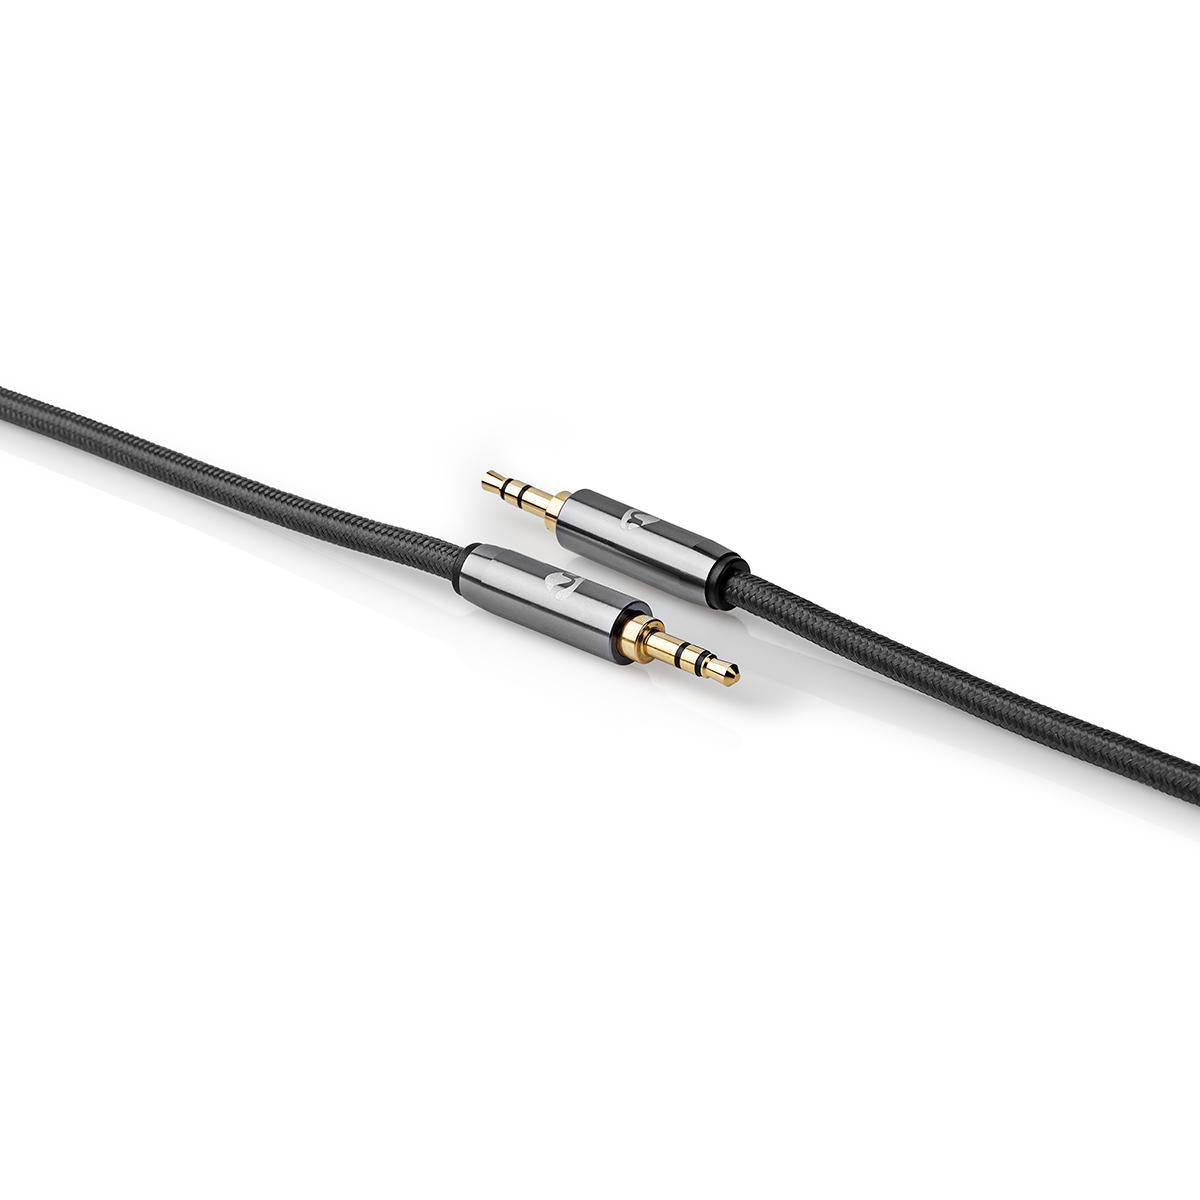 Stereo-Audiokabel | 3.5 mm Stecker | 3.5 mm Stecker | Vergoldet | 2.00 m | Rund | Grau / Gun Metal Grau | Verpackung mit Sichtfenster